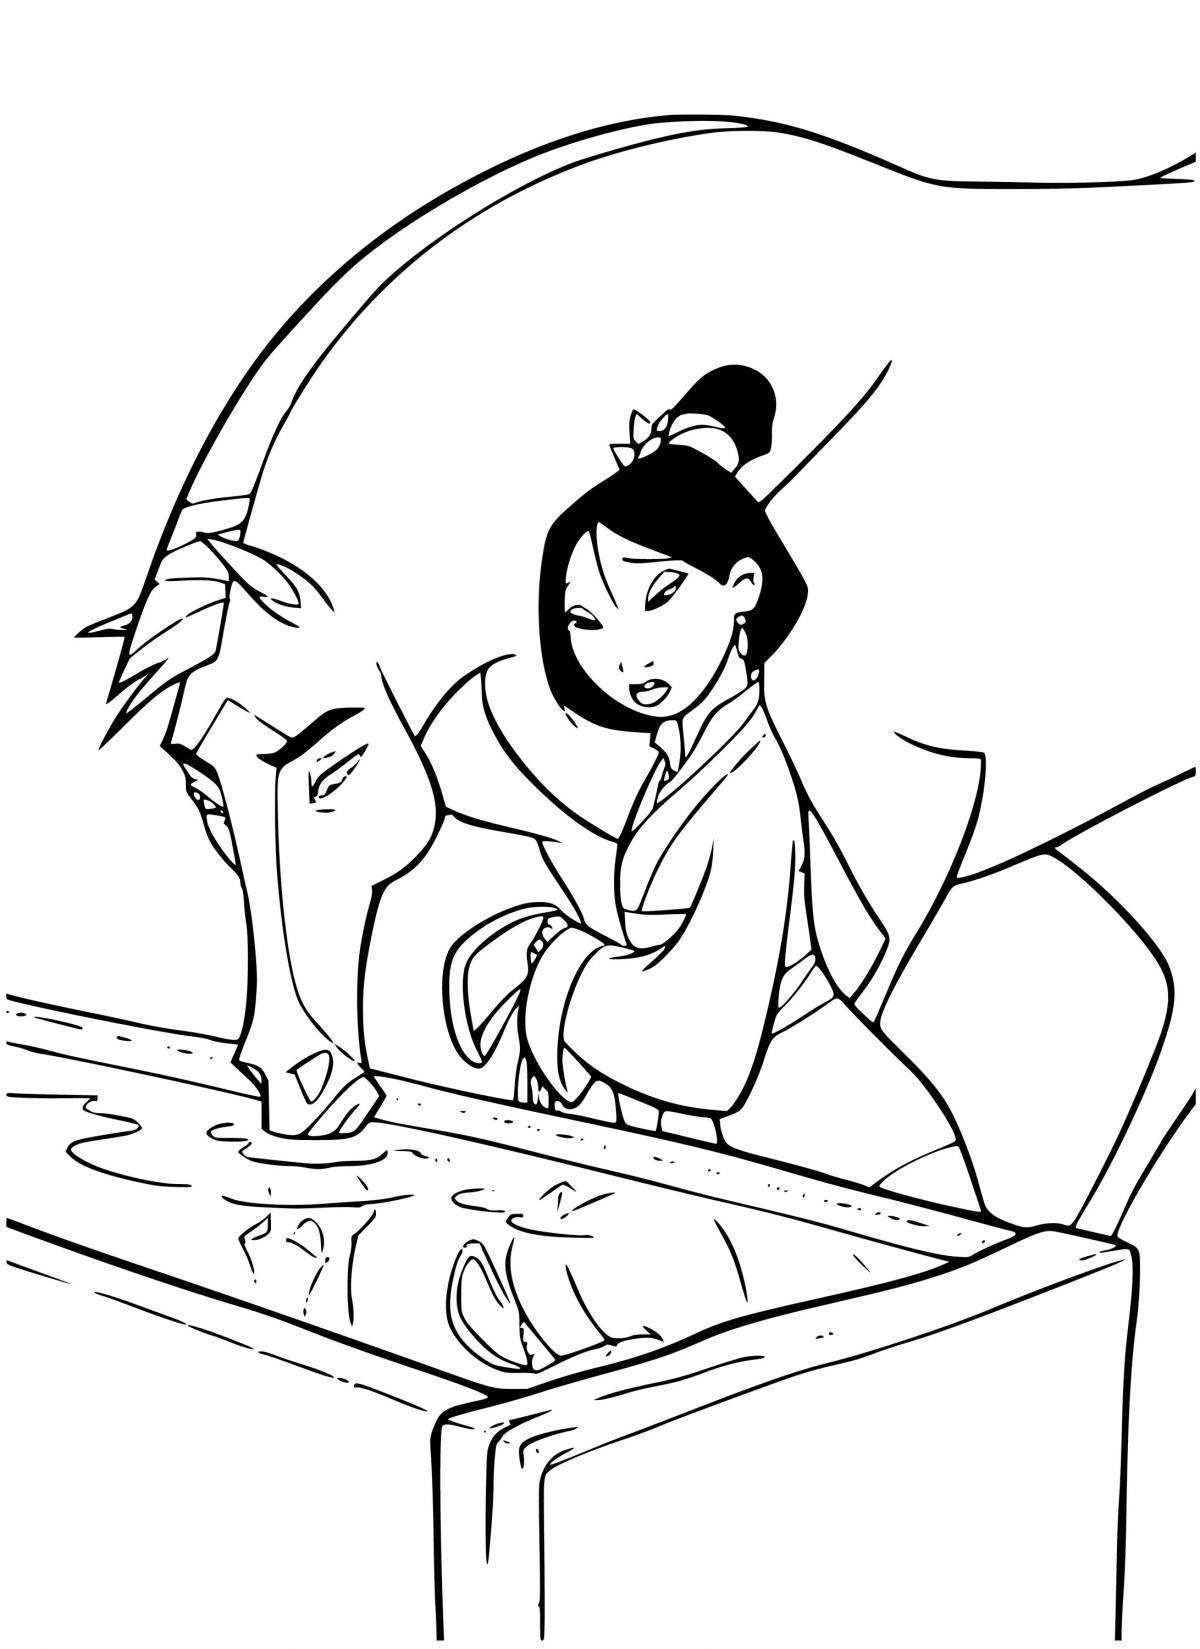 Princess Mulan coloring page